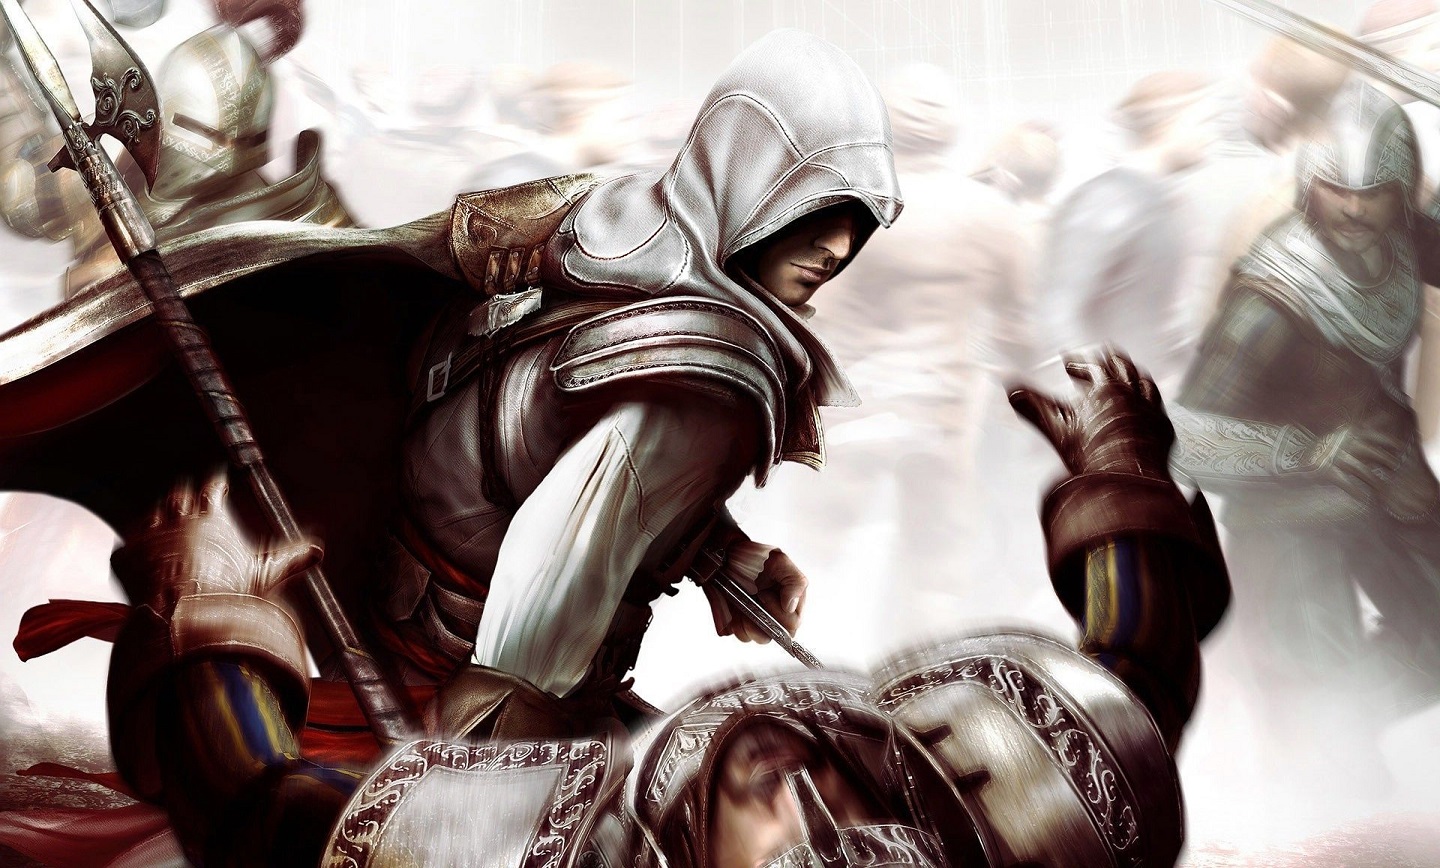 بازی Assassin's Creed 2